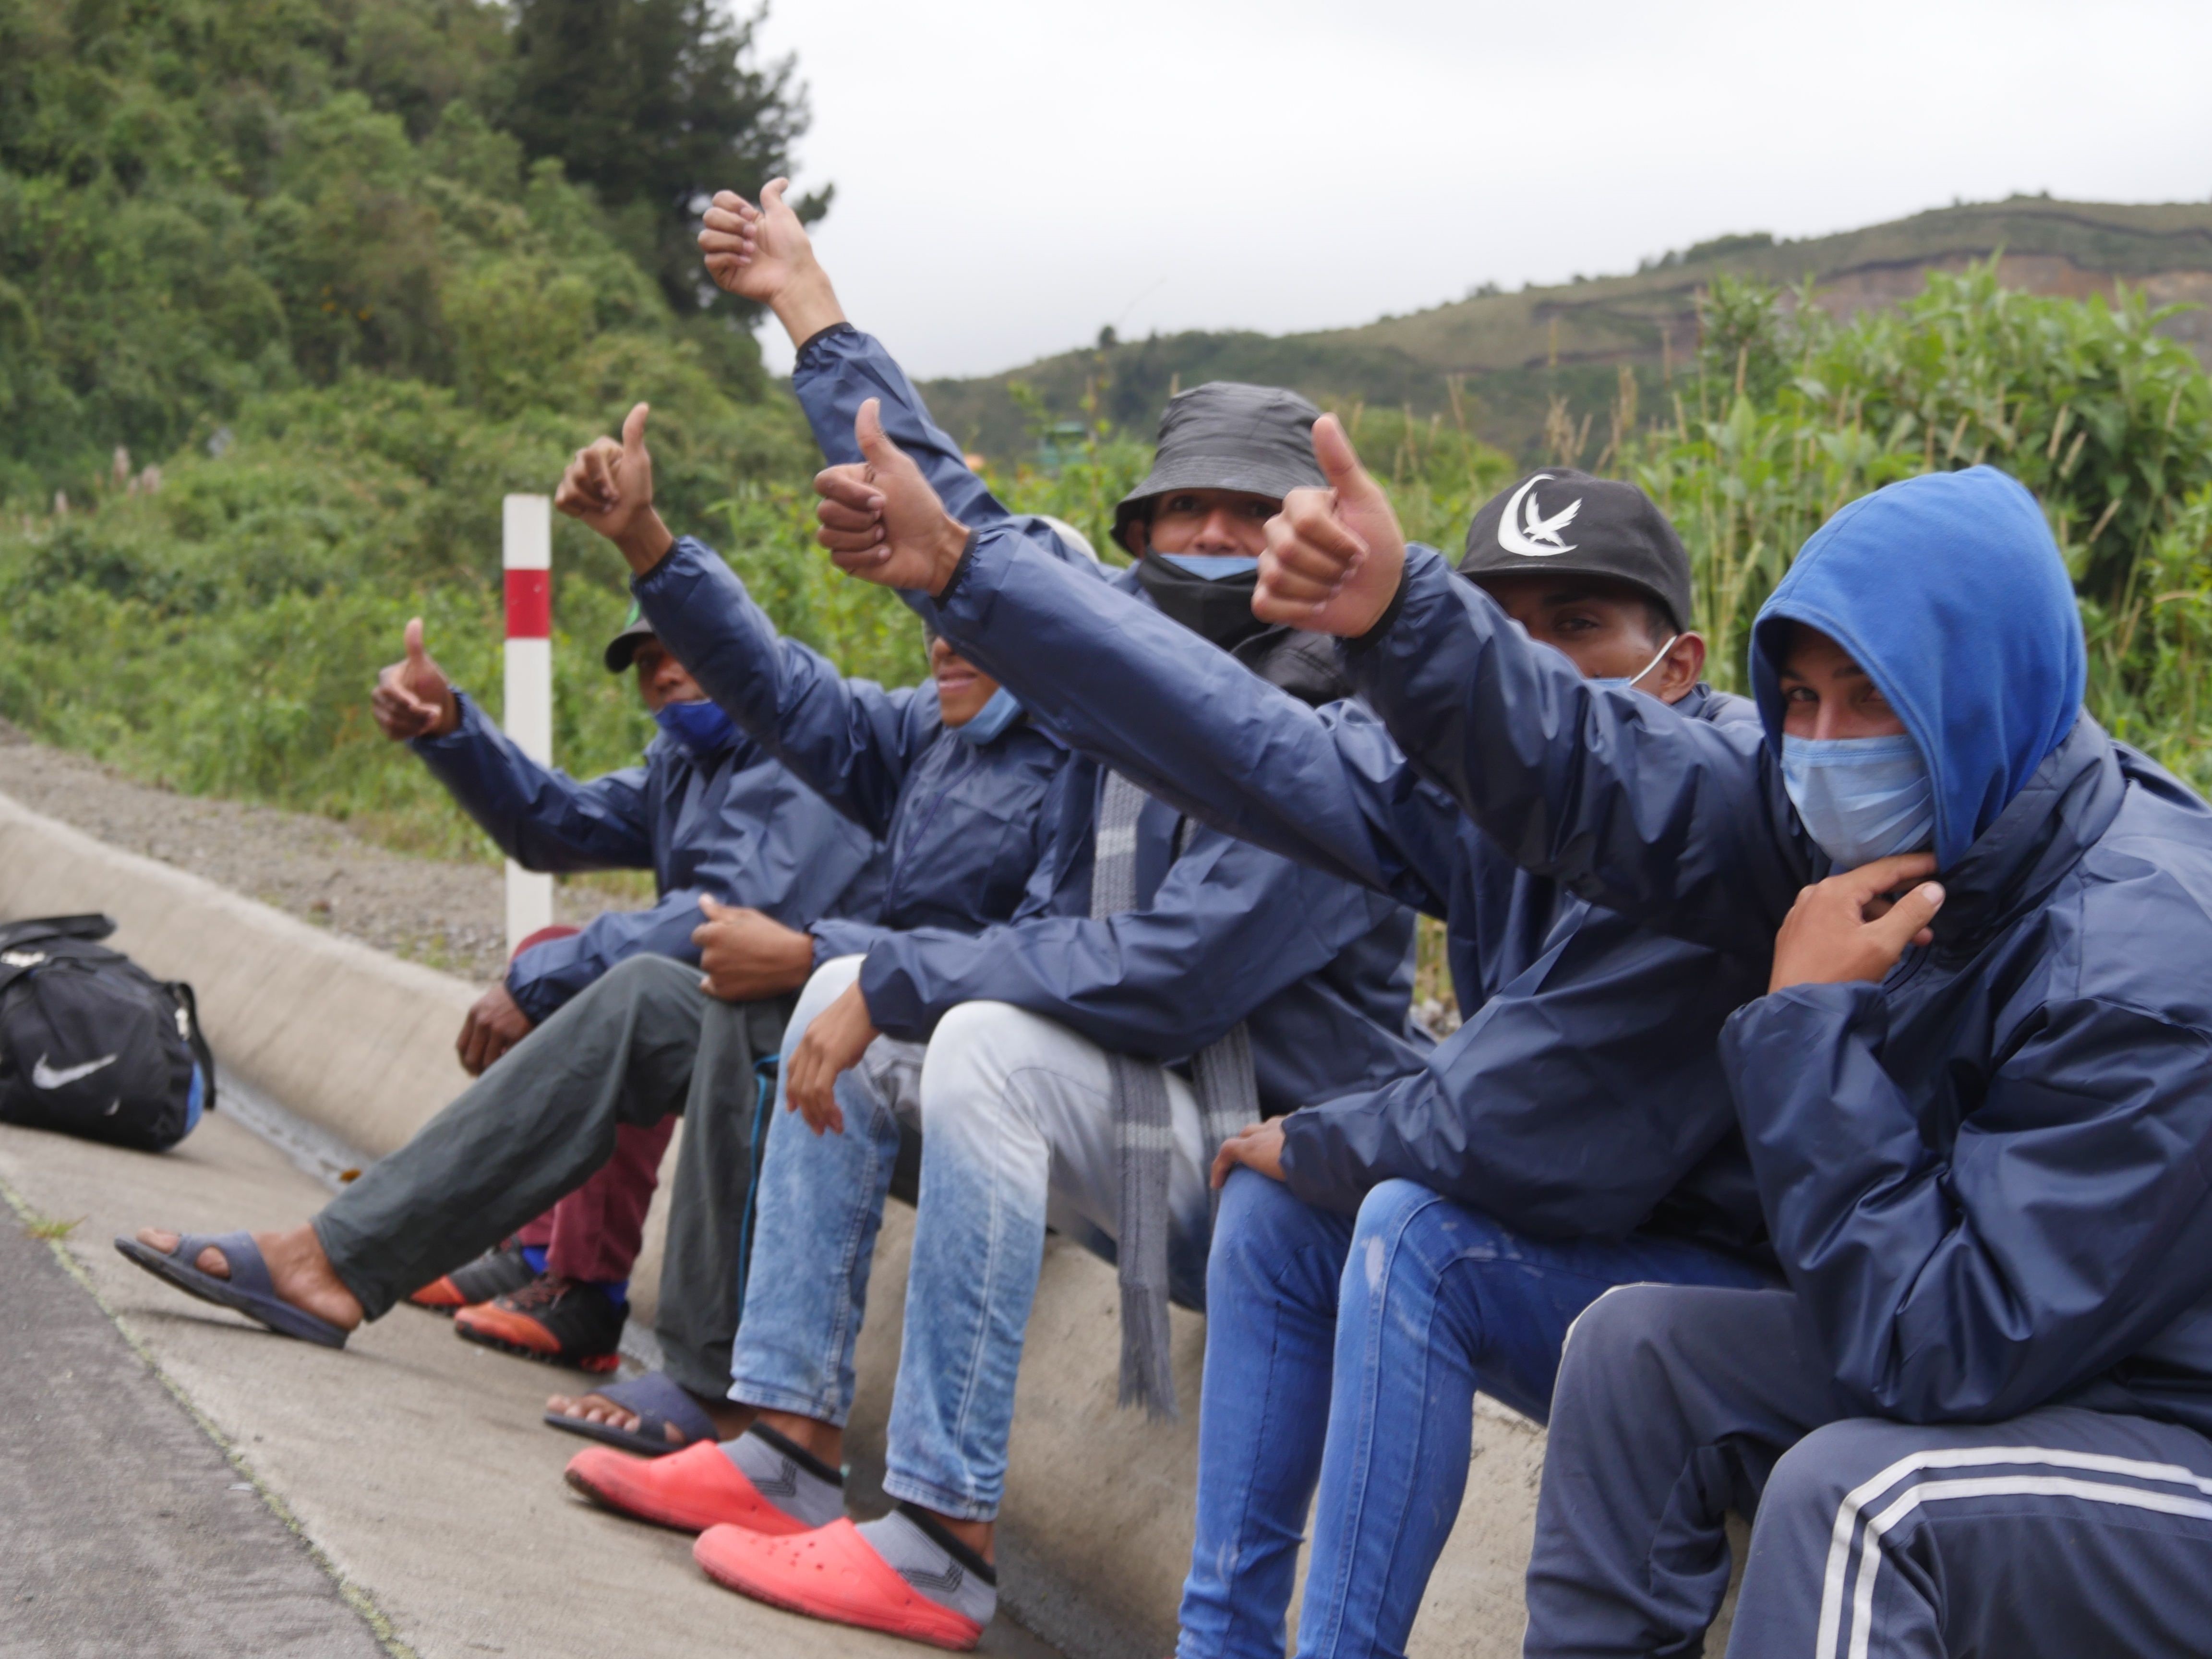 Grupos de migrantes venezolanos descansan junto a una carretera ayer, en la región de Tulcán (Ecuador)